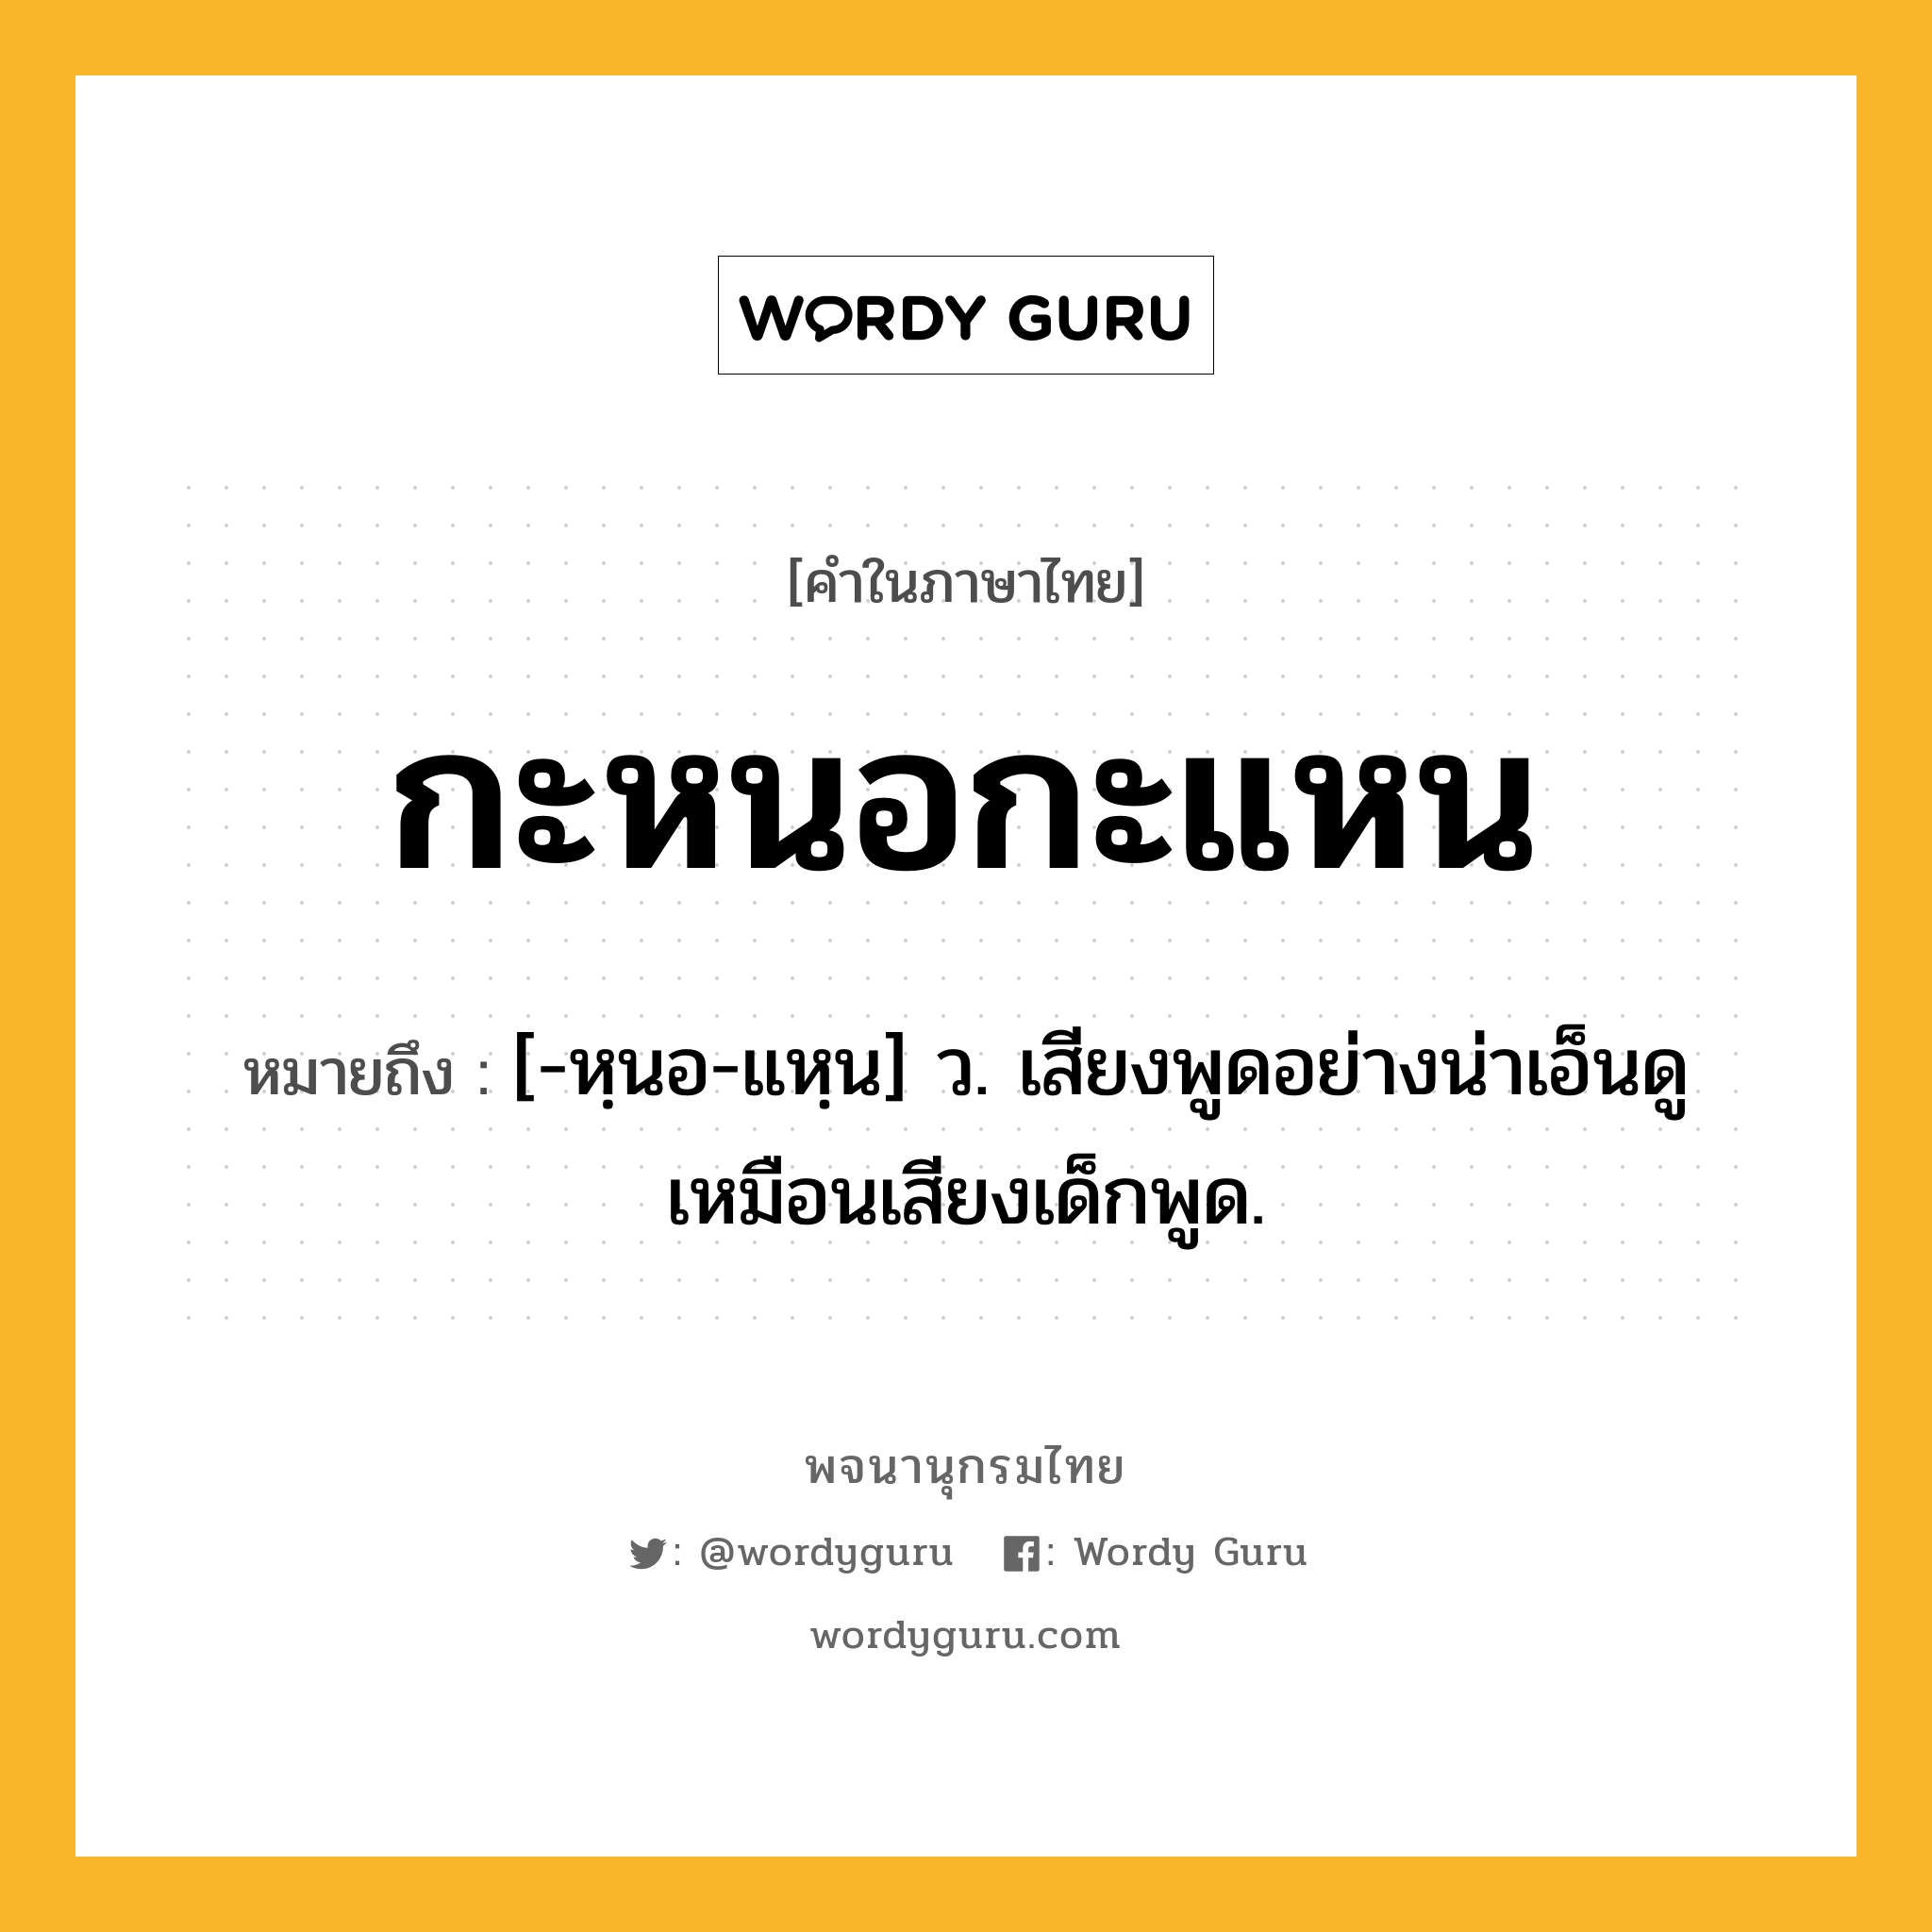 กะหนอกะแหน หมายถึงอะไร?, คำในภาษาไทย กะหนอกะแหน หมายถึง [-หฺนอ-แหฺน] ว. เสียงพูดอย่างน่าเอ็นดูเหมือนเสียงเด็กพูด.